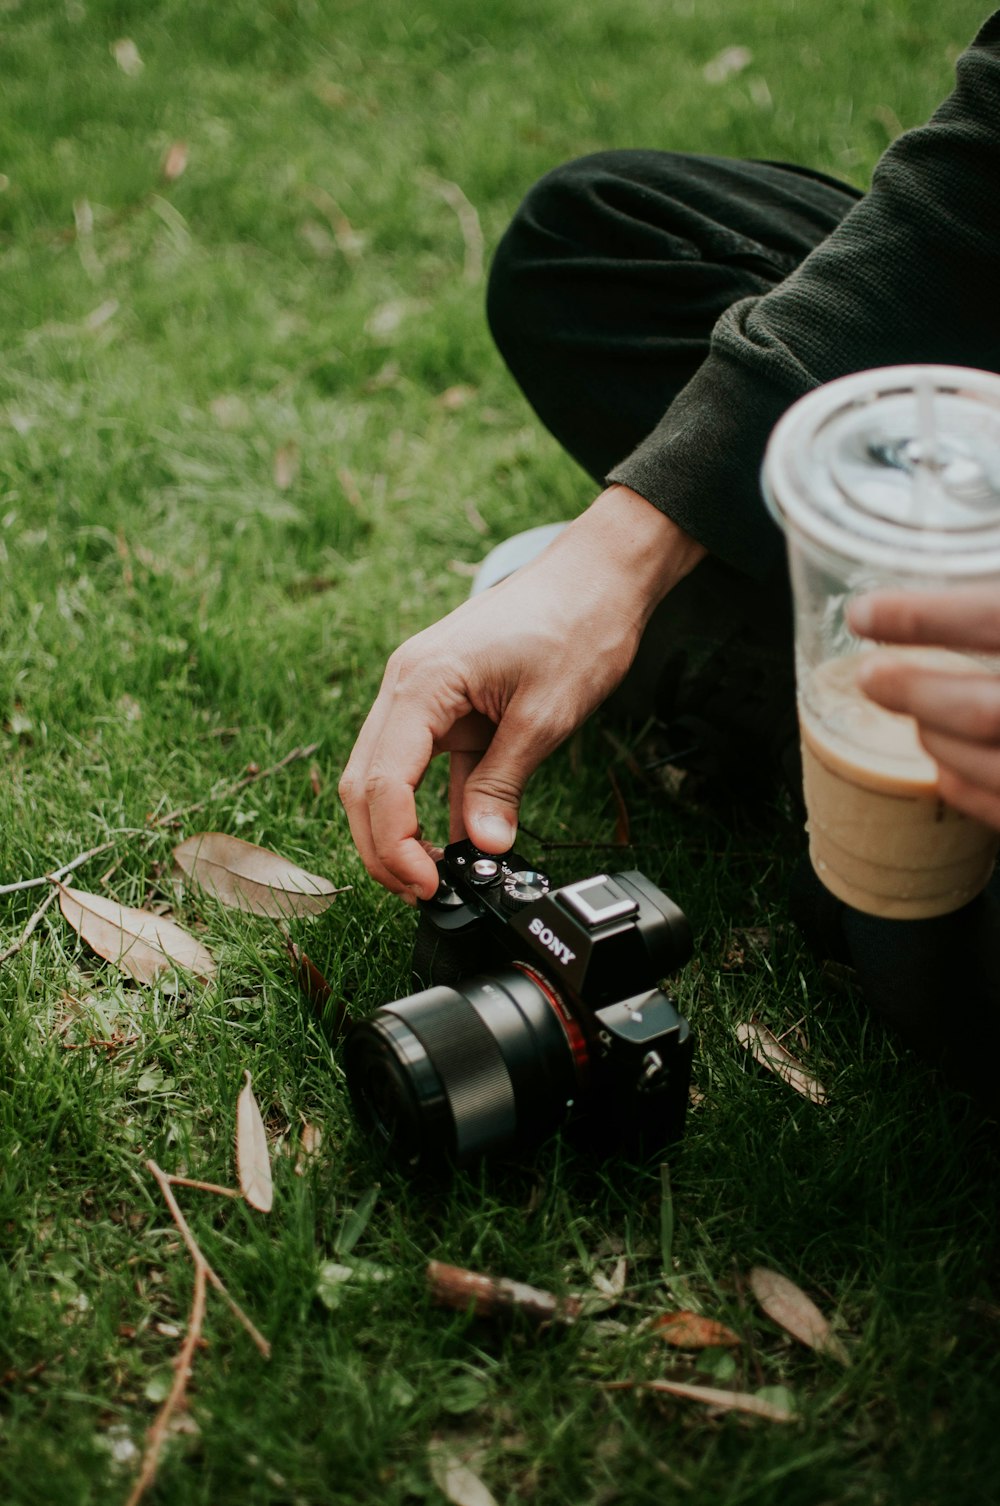 persona usando una cámara Sony SLR negra en un campo de hierba verde